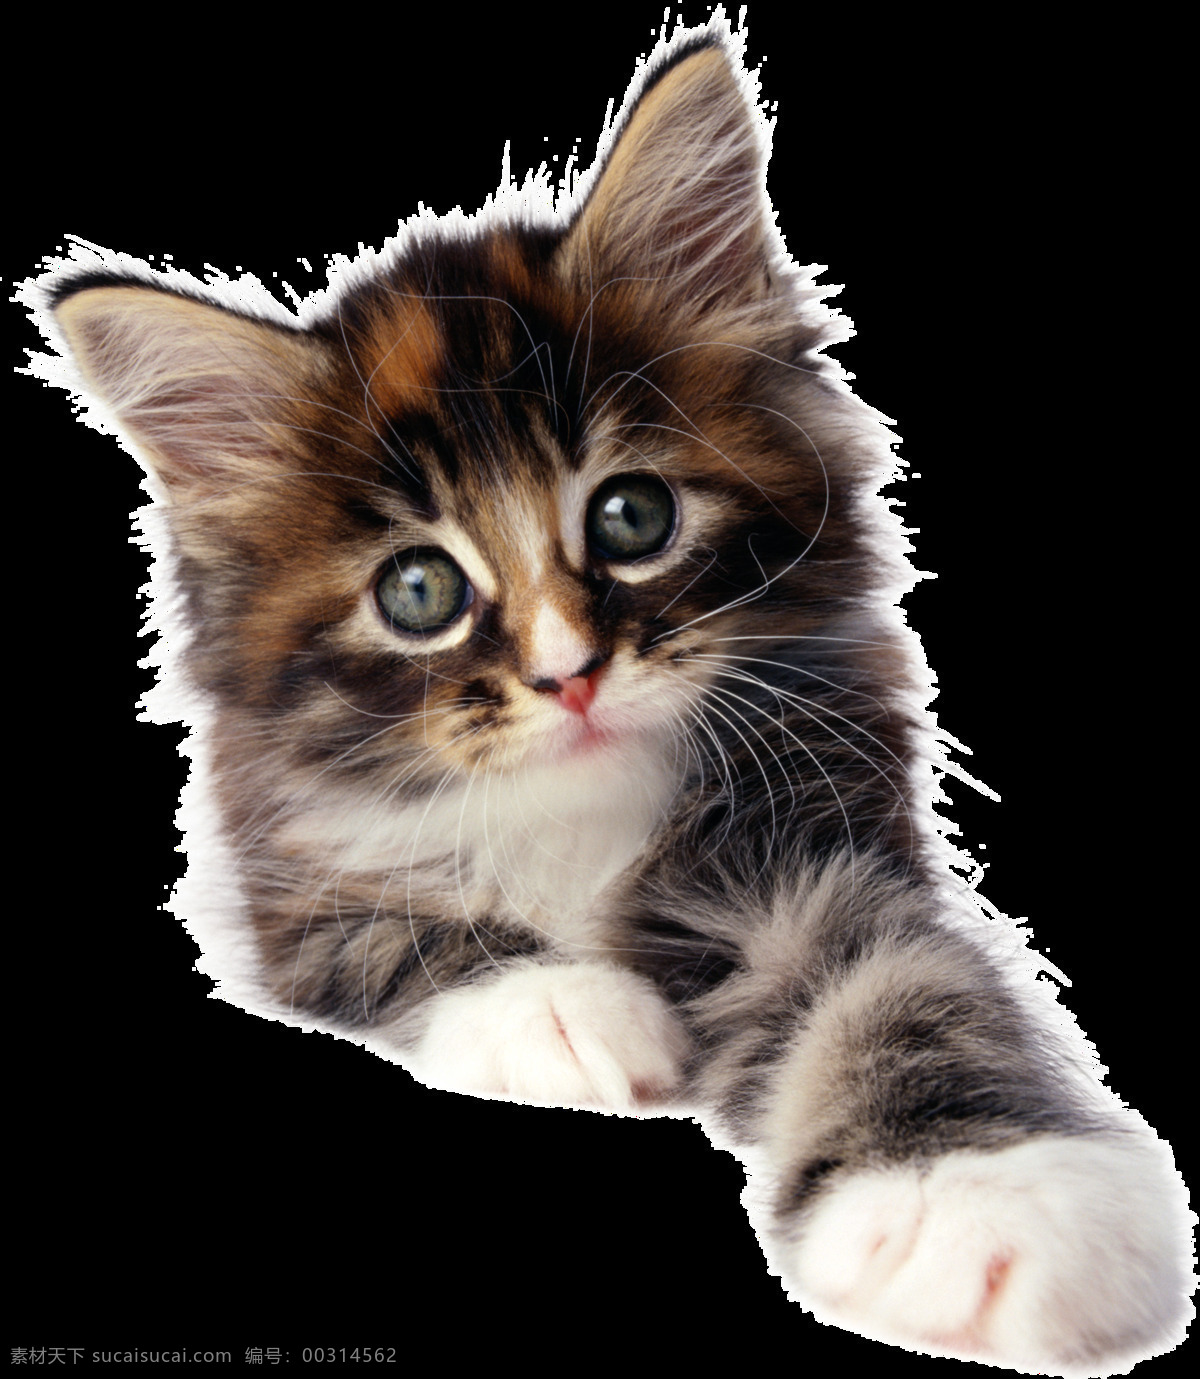 可爱 动物 小 猫咪 可爱动物 小猫咪 猫 呆萌小猫咪 图案 哺乳动物 宠物 生物世界